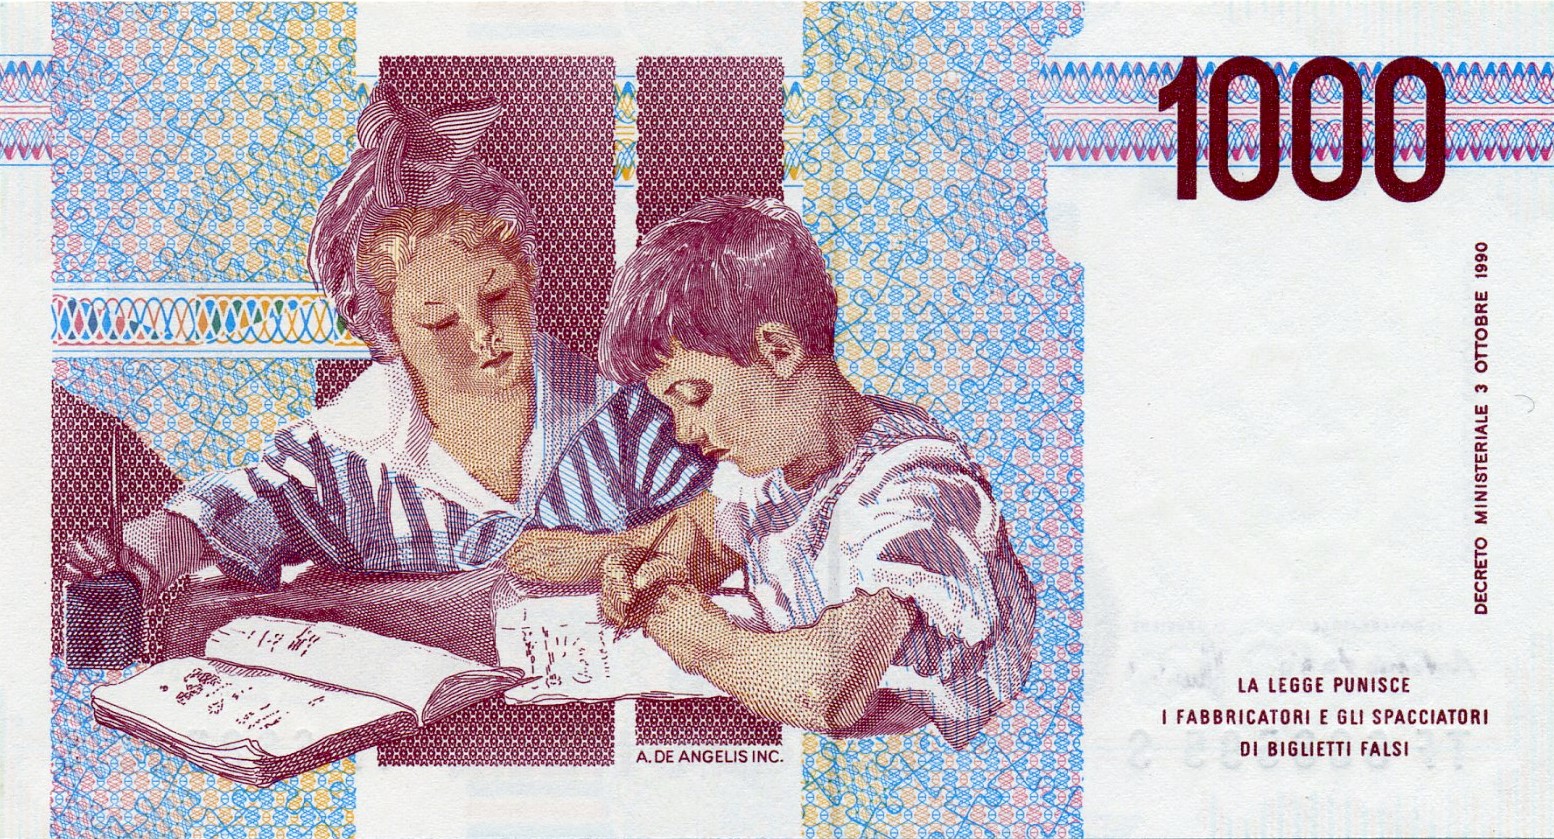 1000 итальянских лир 1990 года. Реверс. Реферат Рефератович.